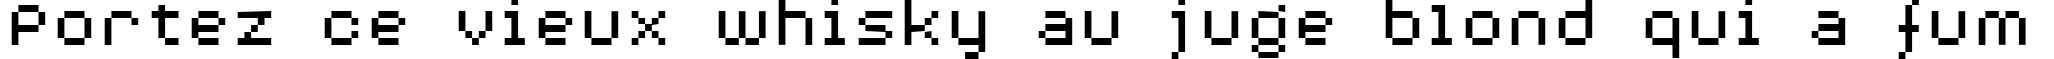 Пример написания шрифтом AuX DotBitC Xtra текста на французском